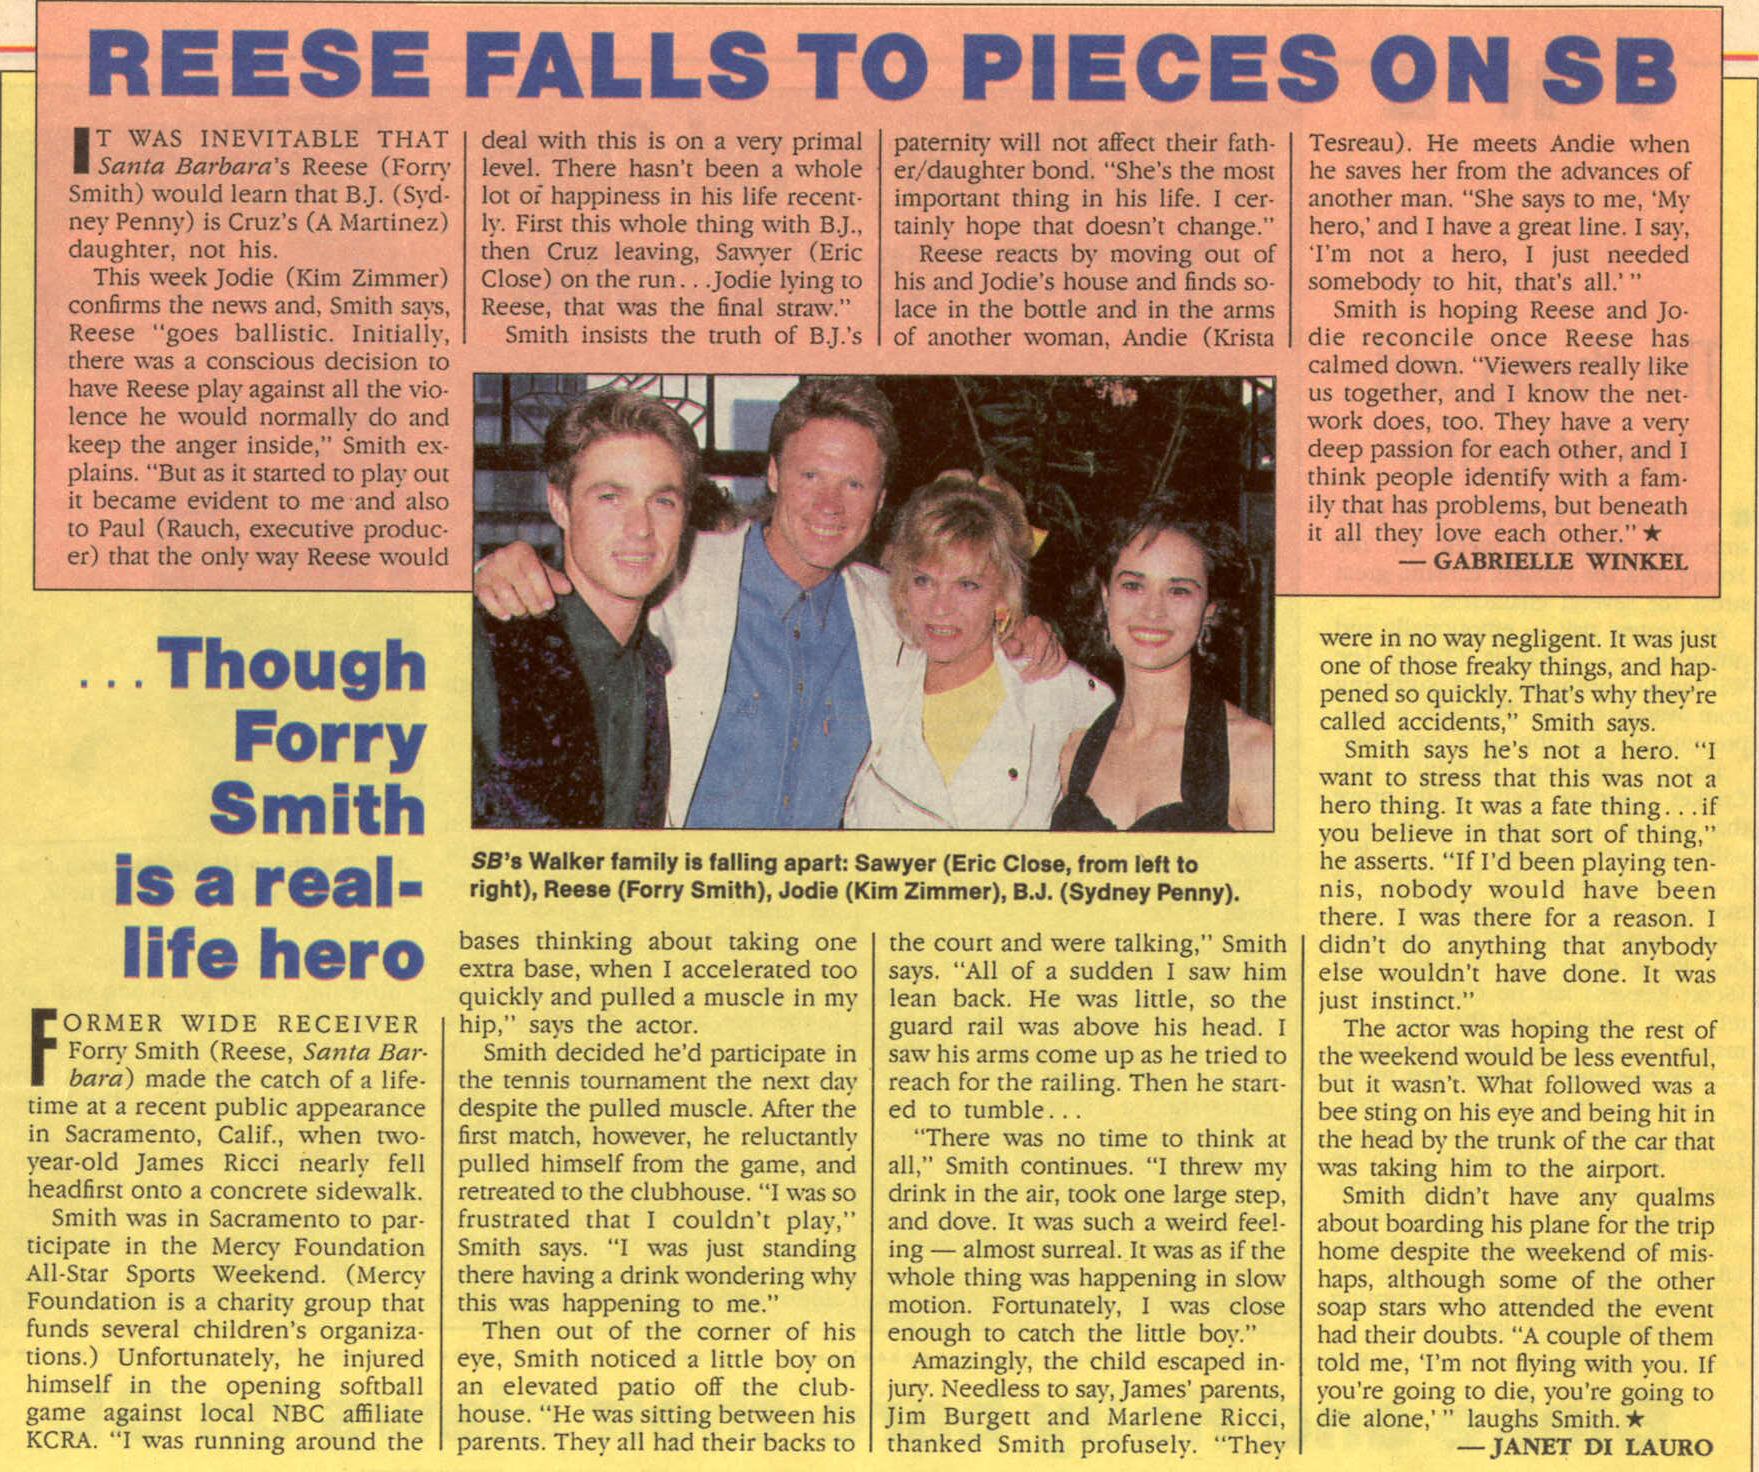 Reese Falls to Pieces
Keywords: santa_barbara_media;media_review